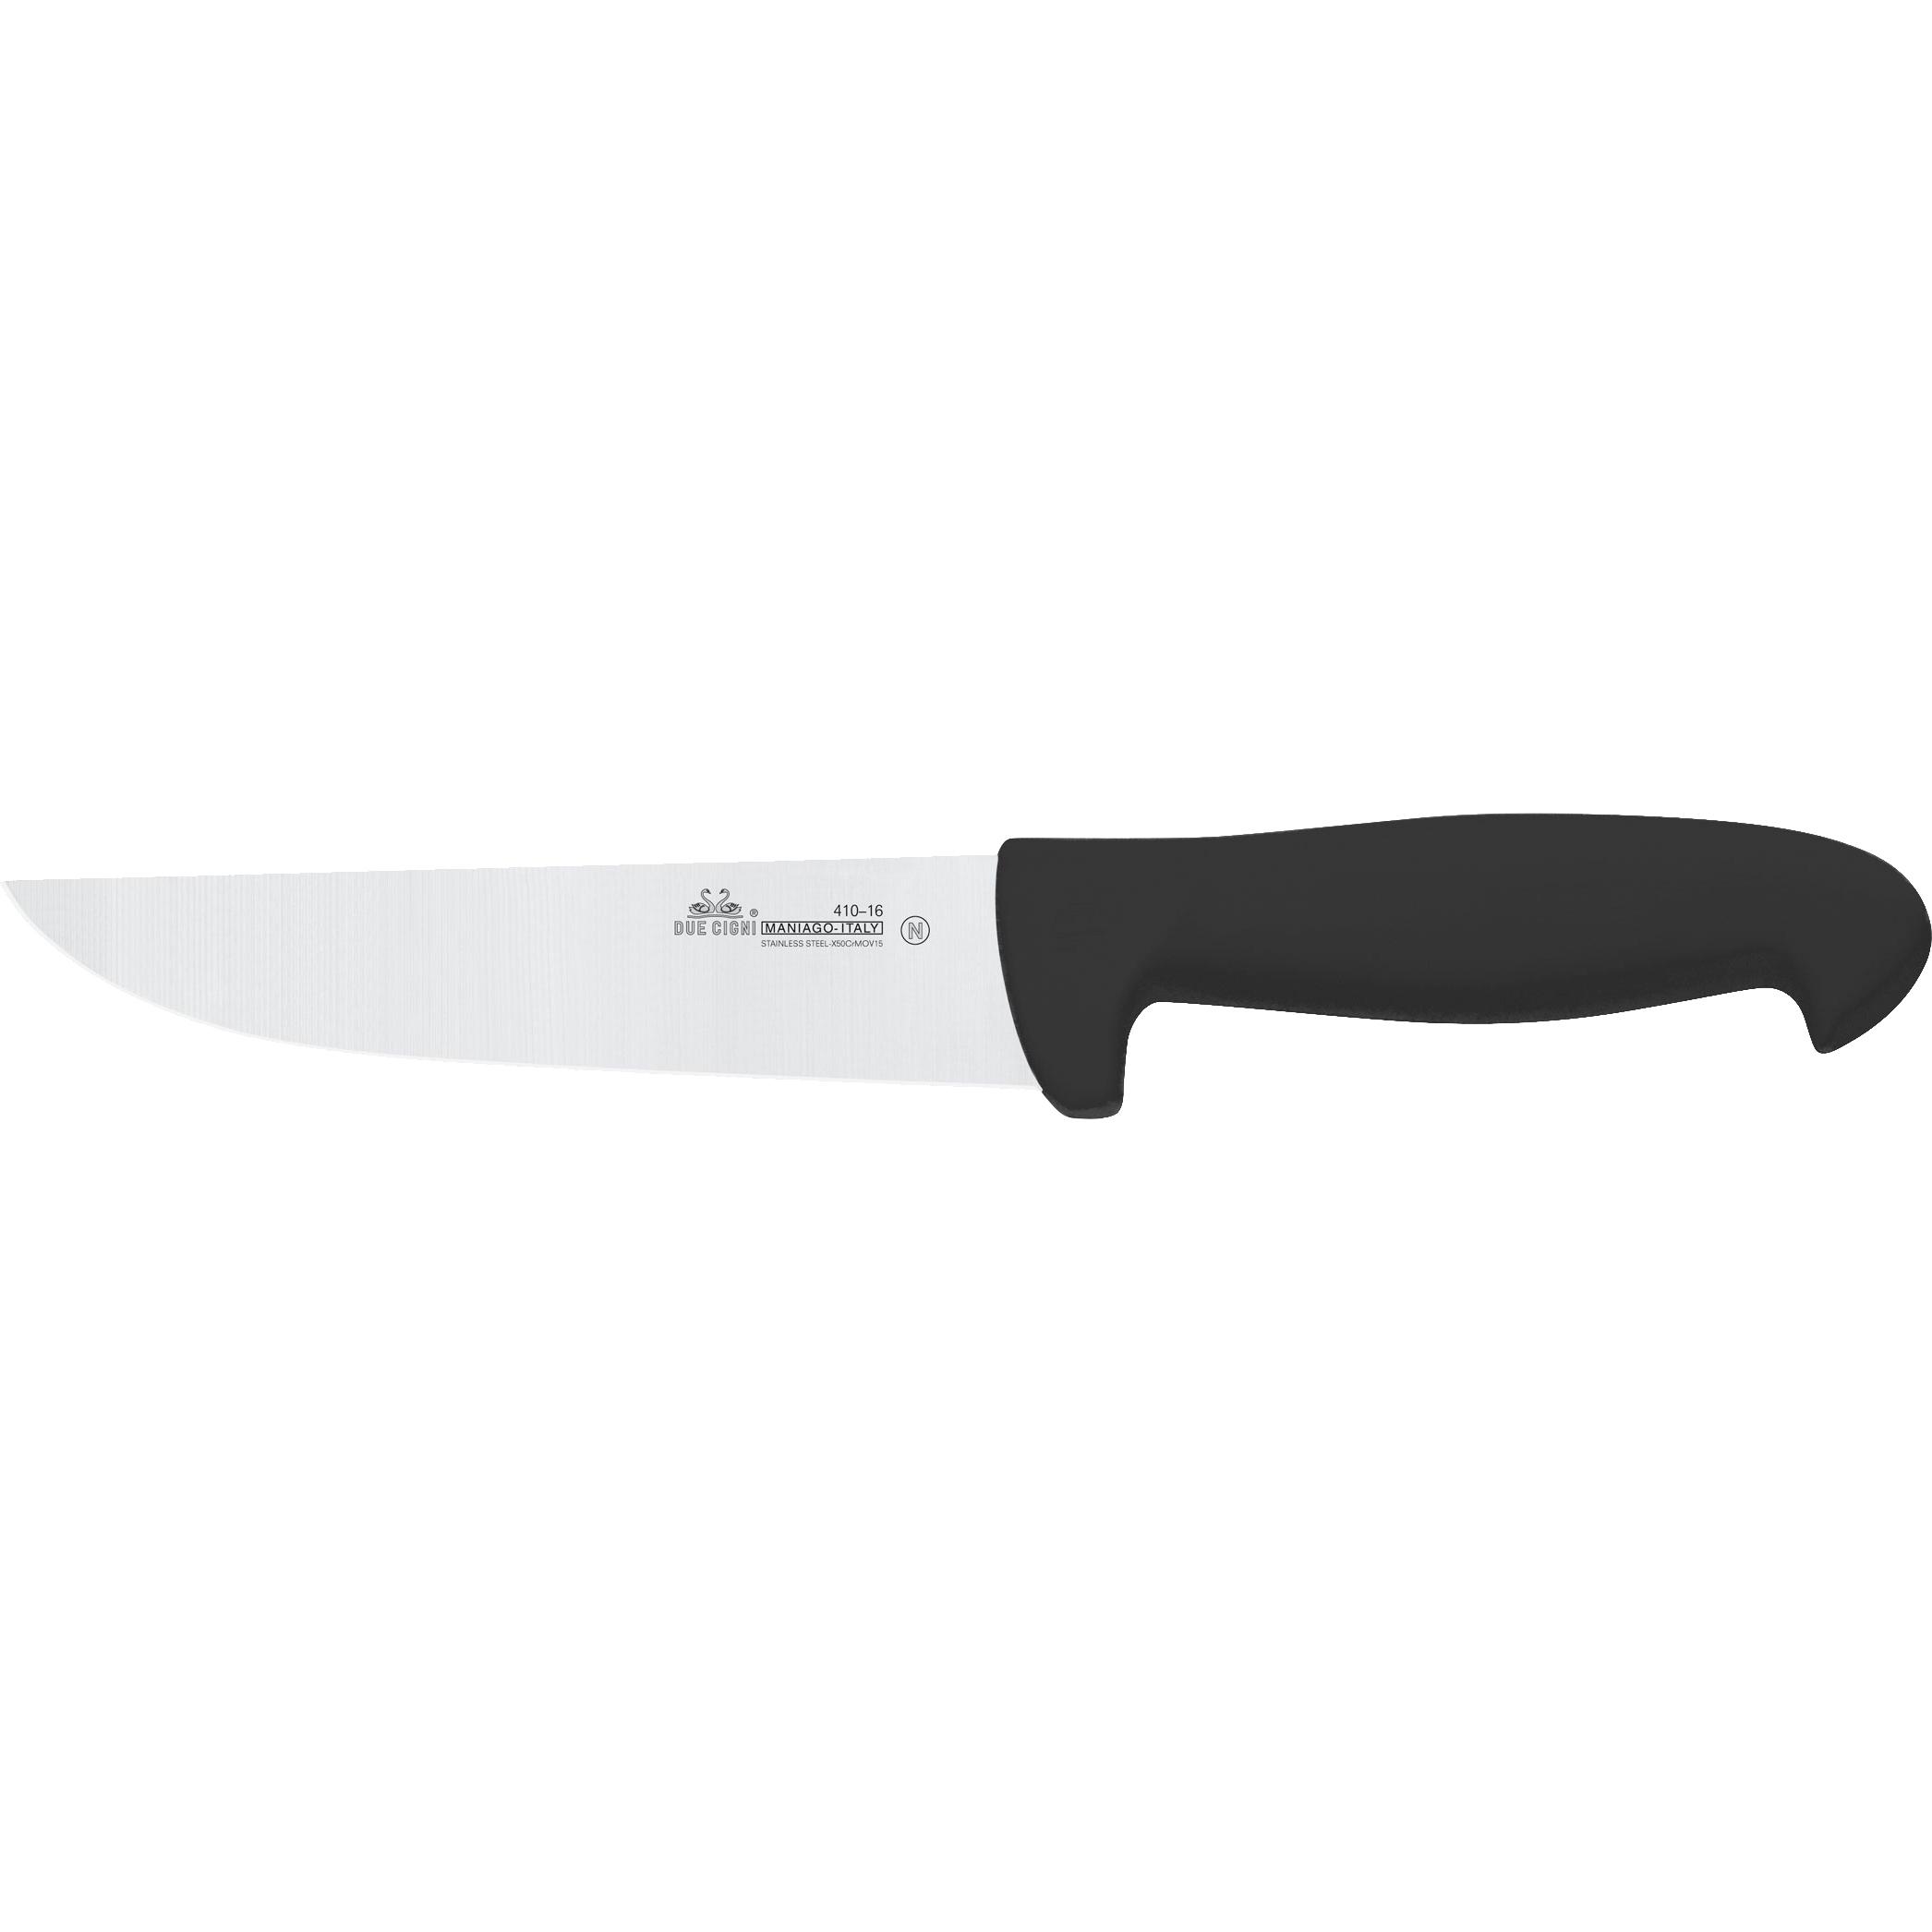 Ніж кухонний Due Cigni Professional Butcher Knife 140 мм. Колір - чорний 2C 410/16 N 1904.00.99